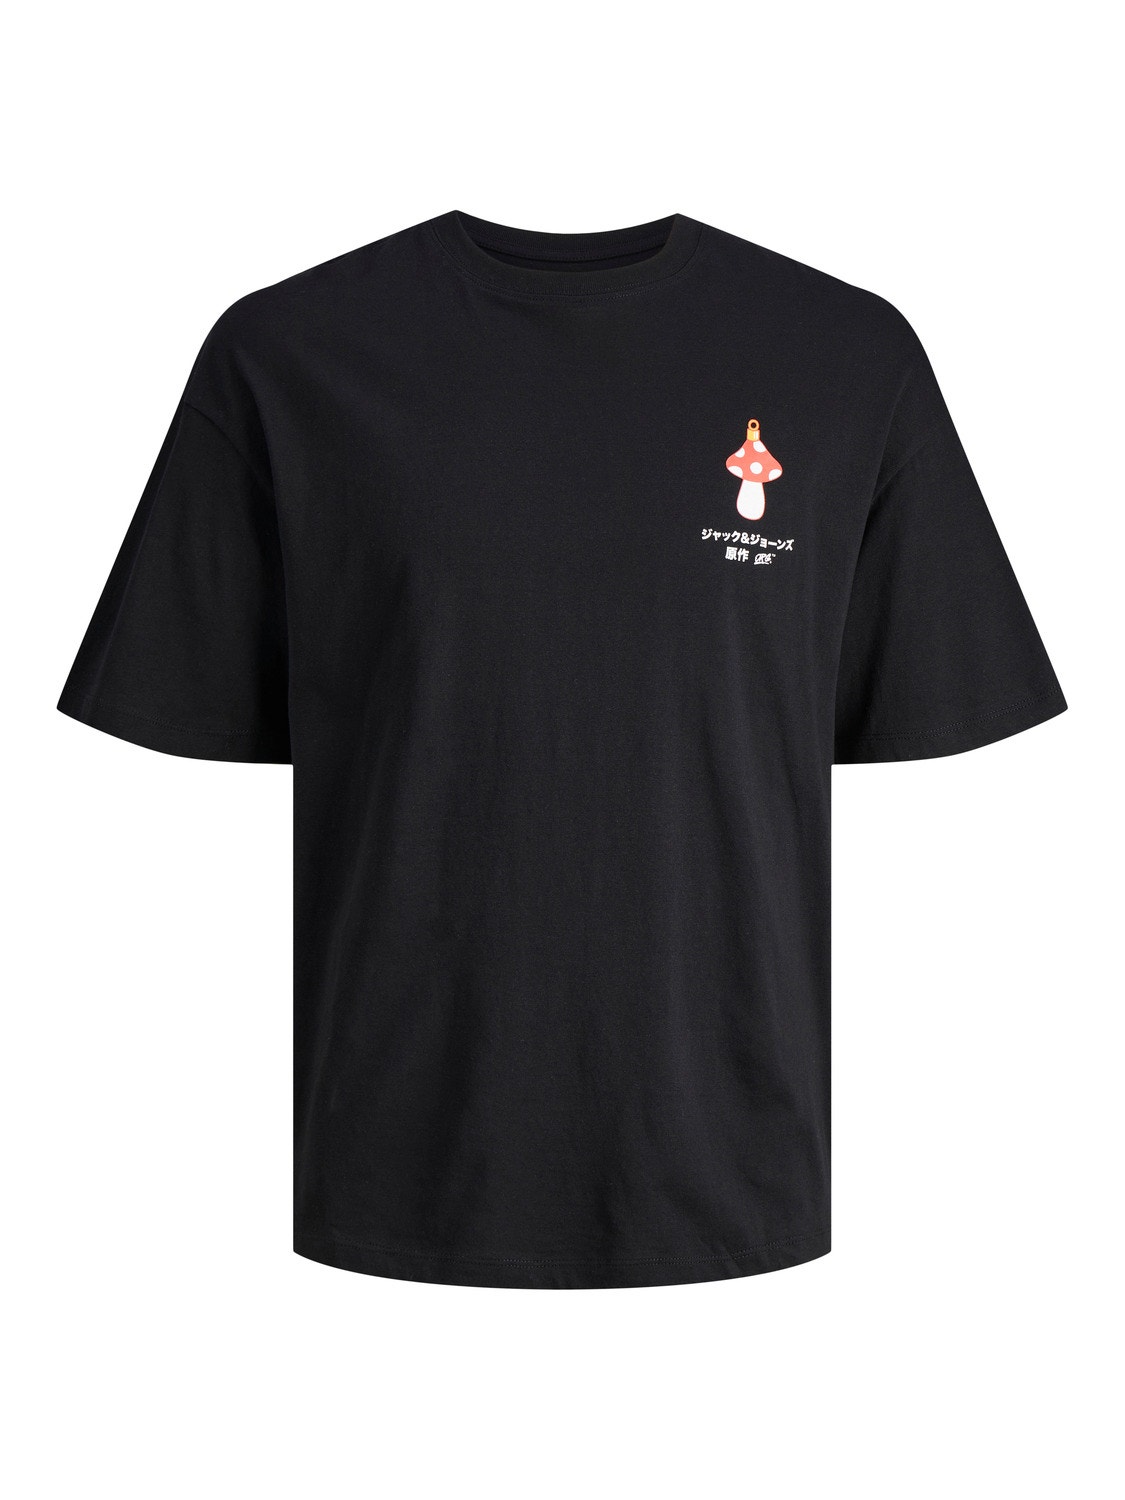 X-mas Crew neck T-shirt with 50% discount! | Jack & Jones®